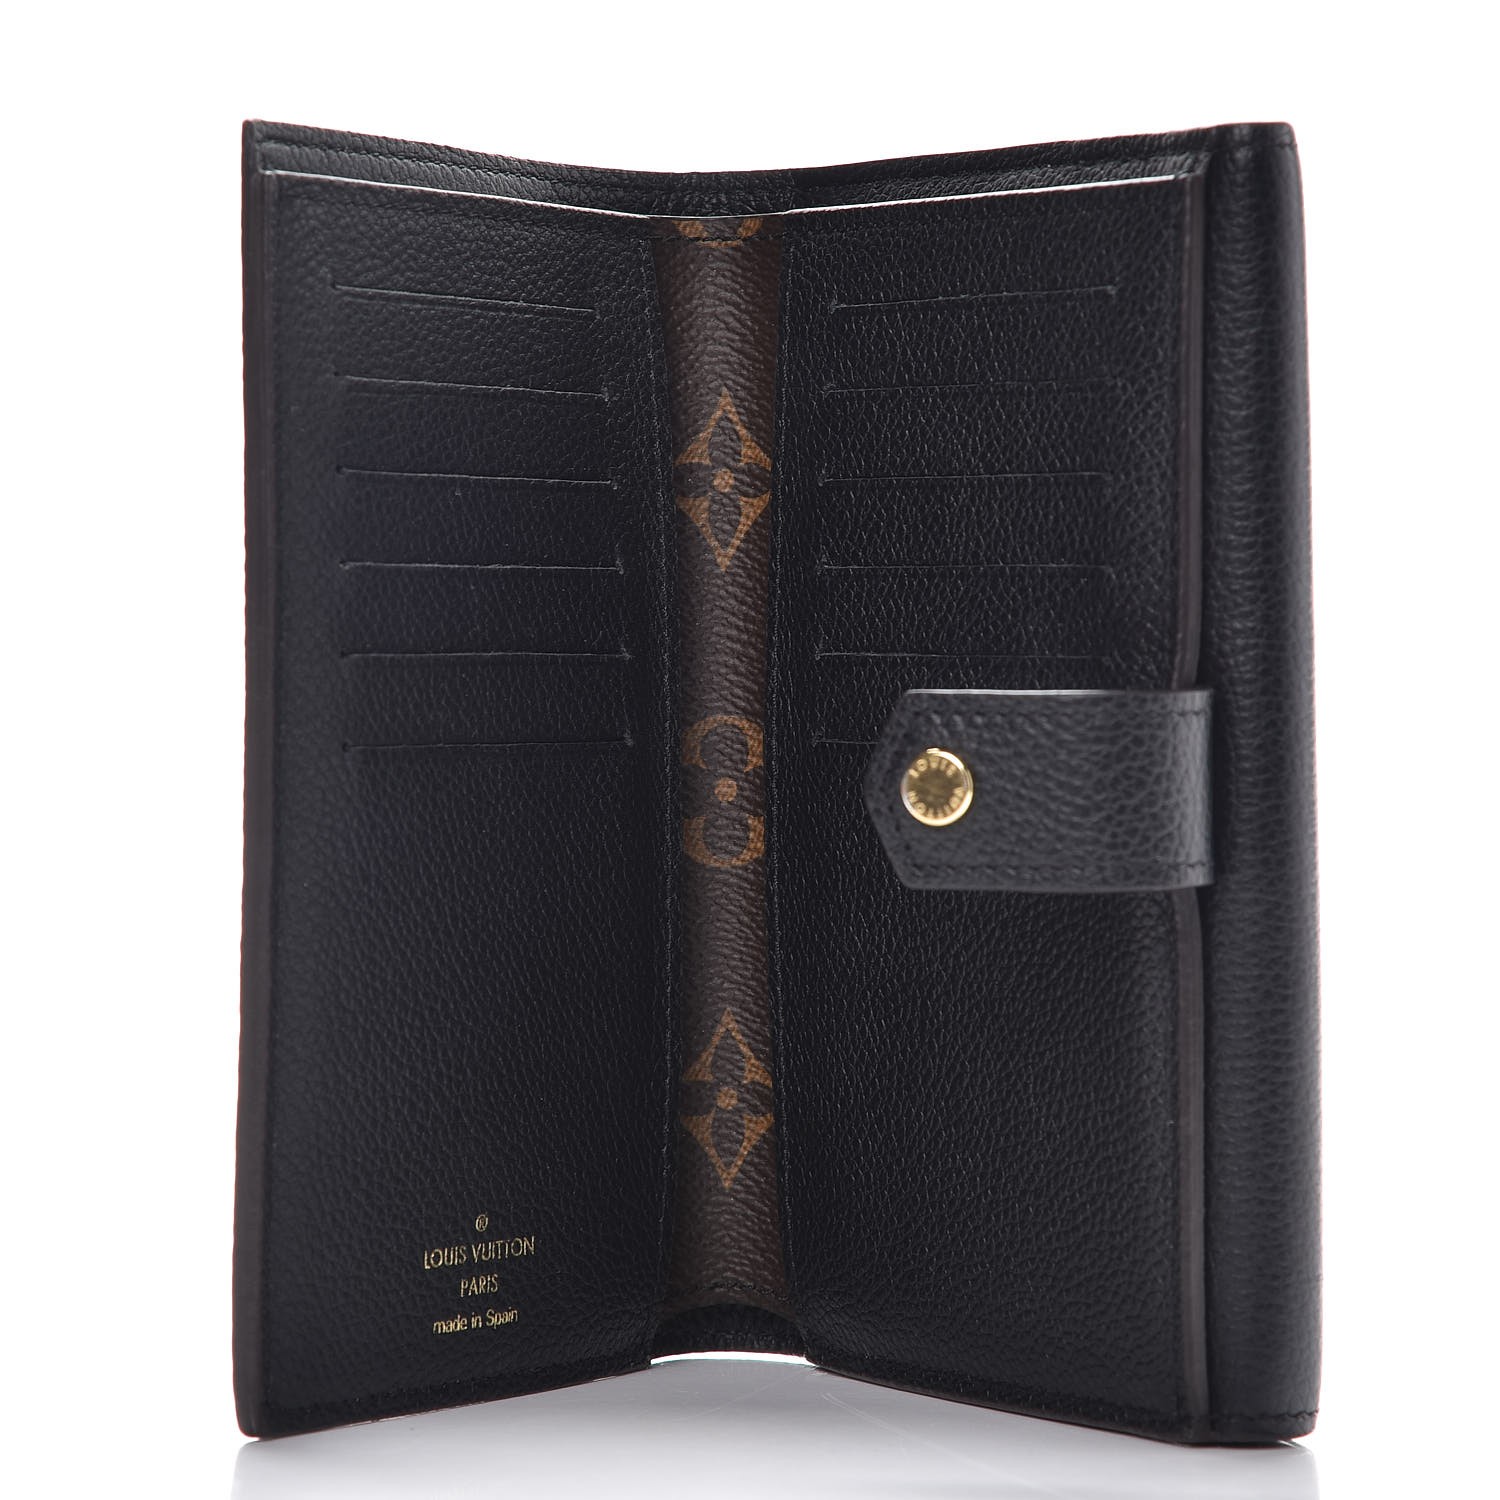 LOUIS VUITTON Monogram Pallas Compact Wallet Noir Black 279725